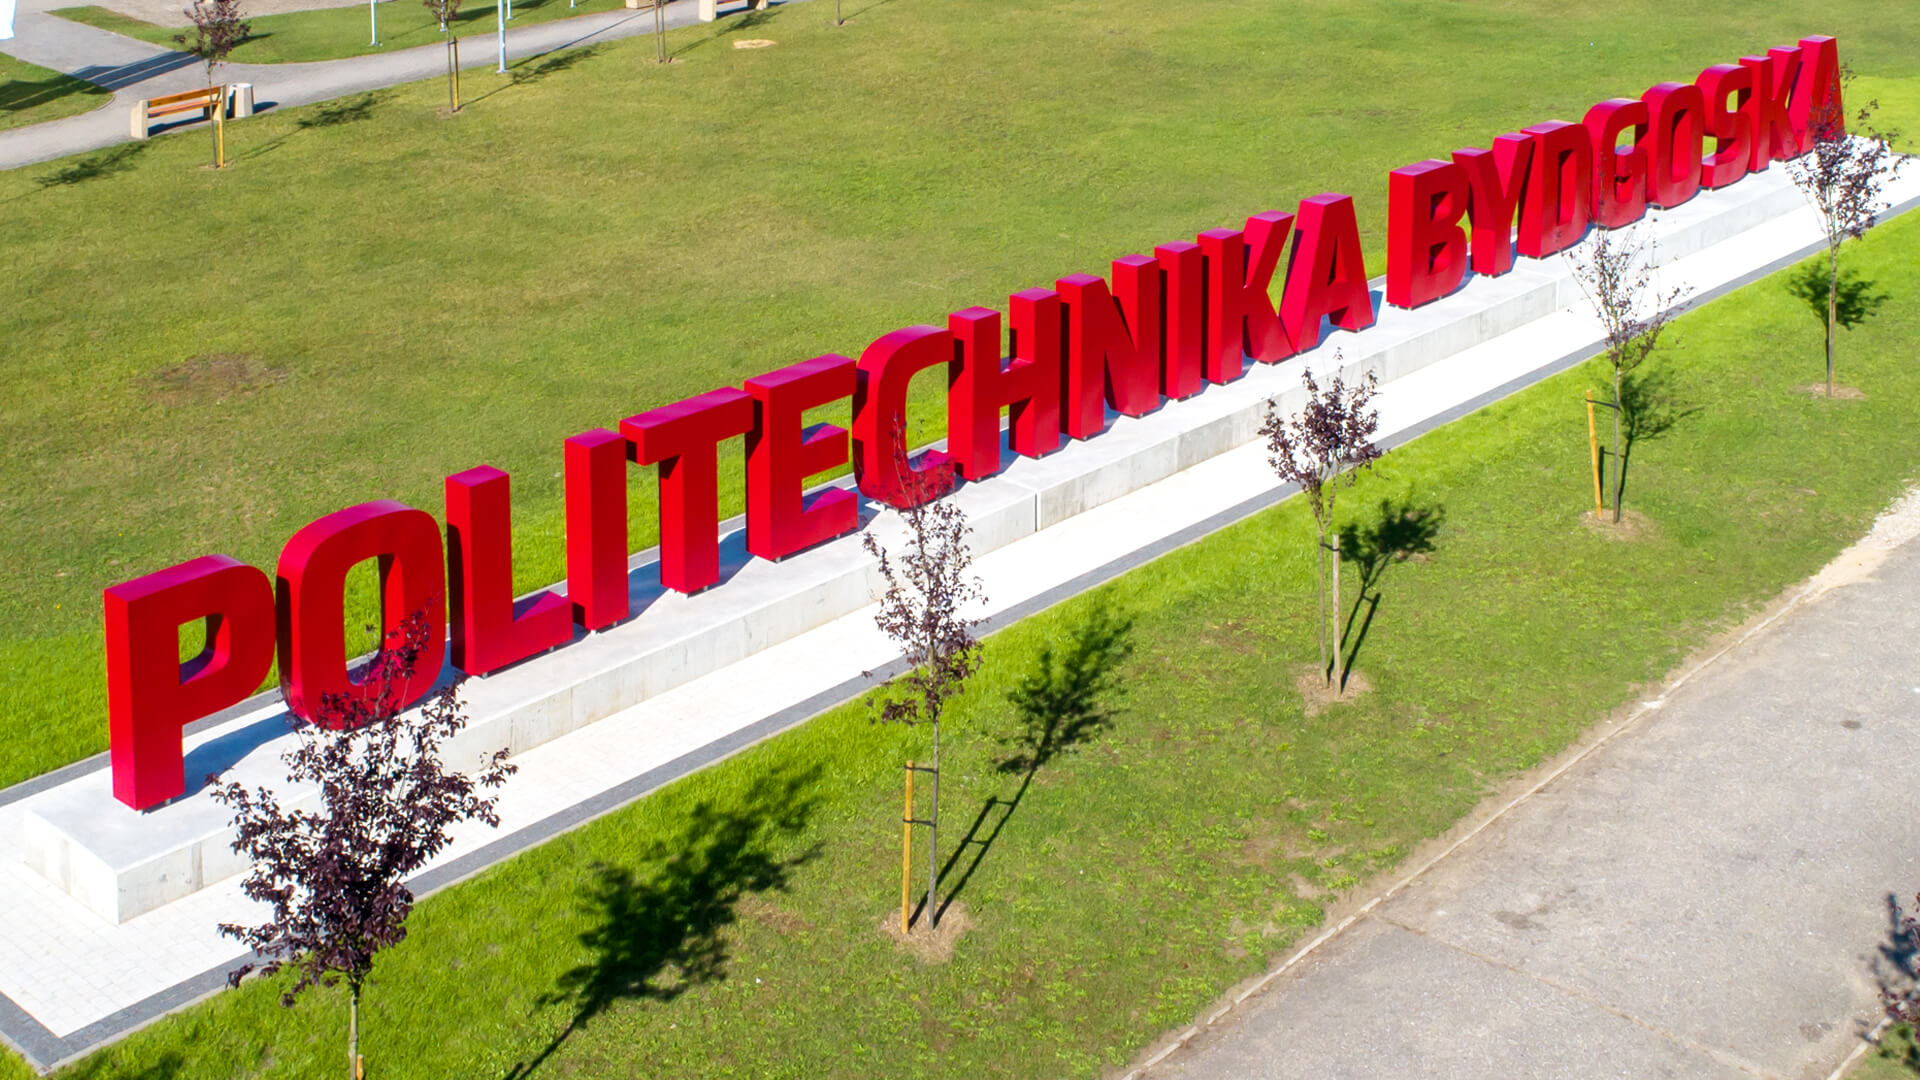 Universidad Tecnológica de Bydgoszcz - universidad politécnica de bydgoszcz letras de gran formato en negro